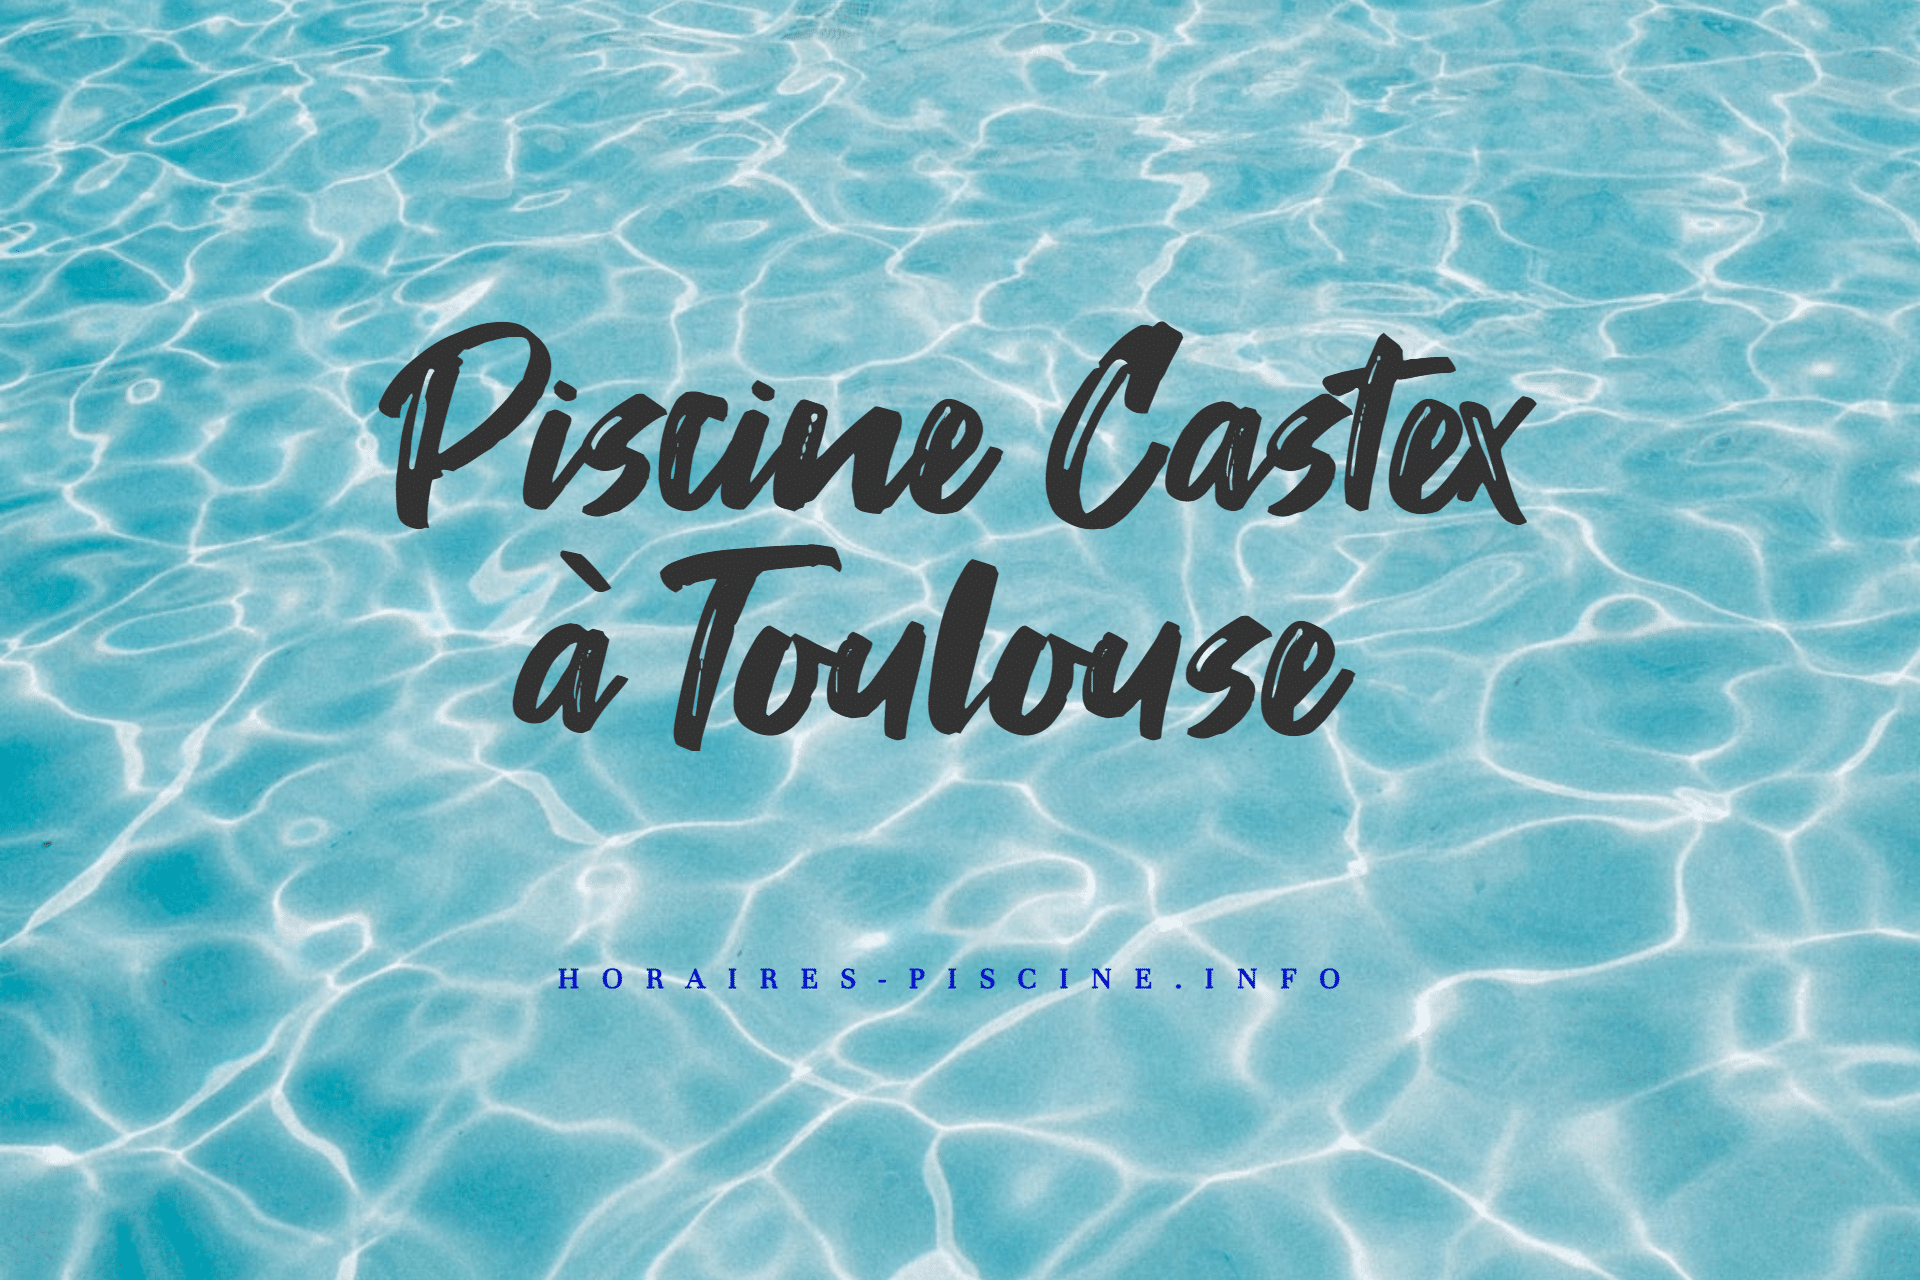 Piscine Castex à Toulouse